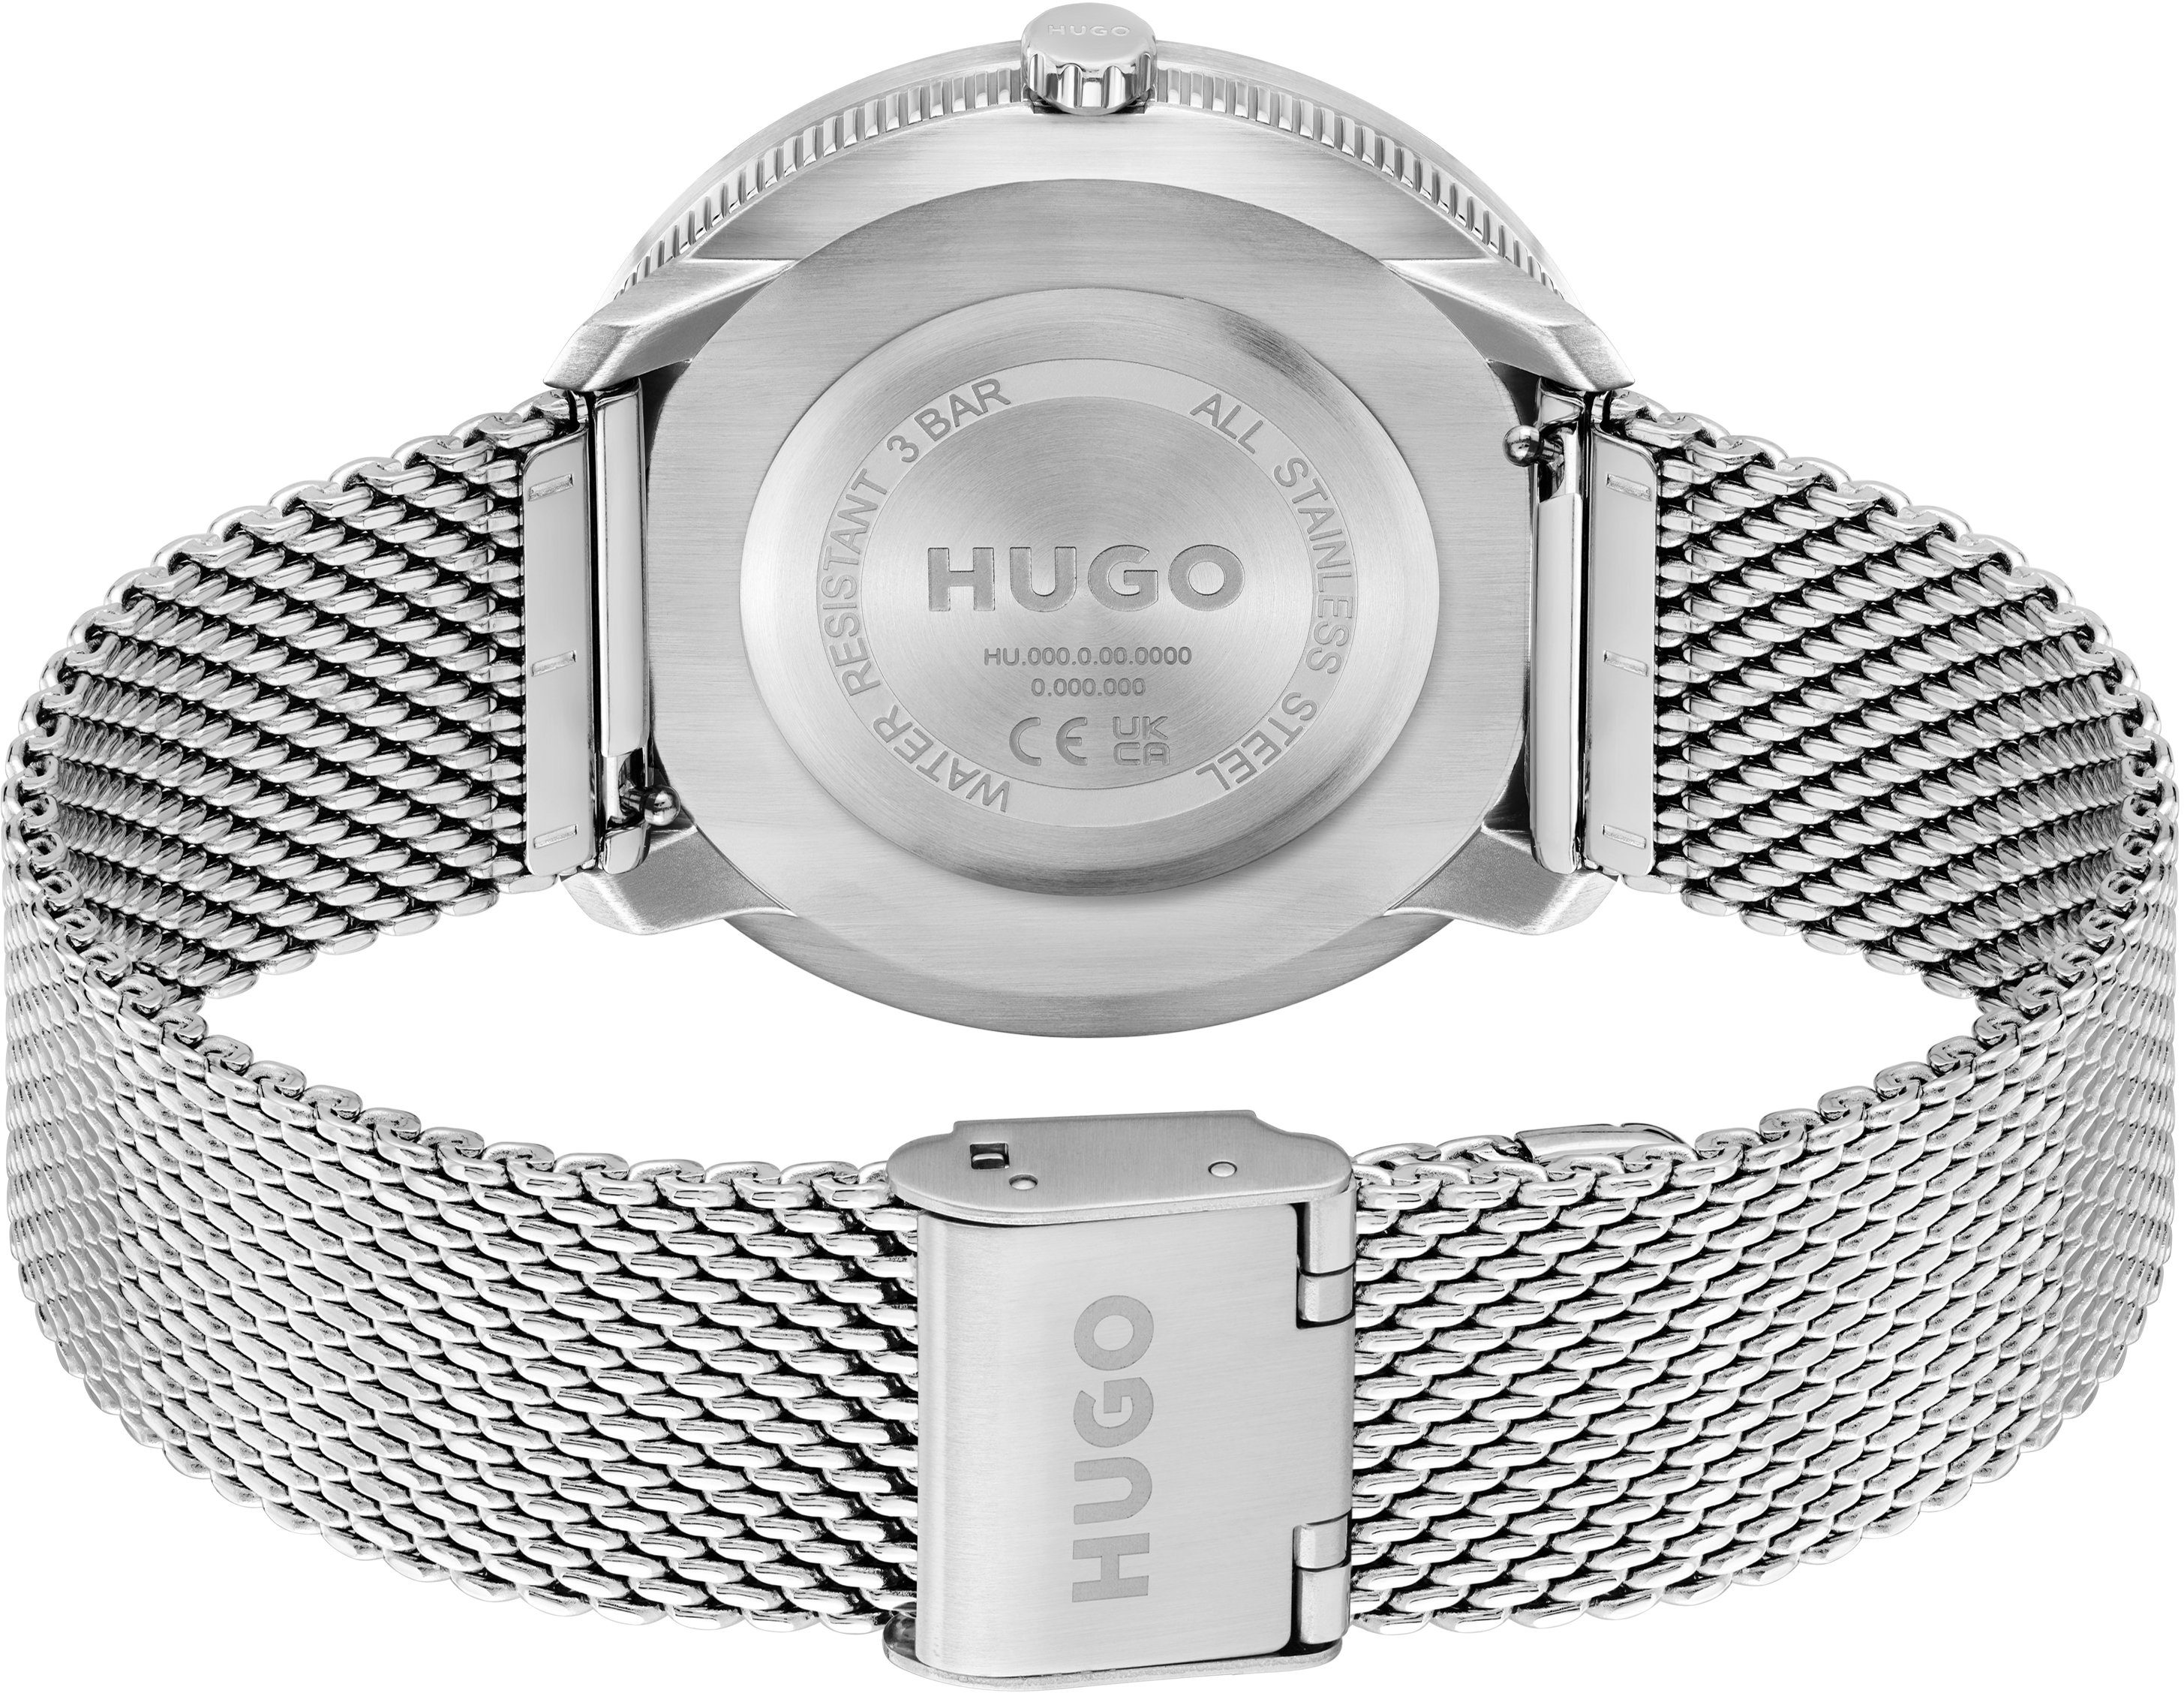 HUGO Quarzuhr #FLUID, 1520025, mit Uhr auch ideal als 2-tlg., Geschenk (Set, Wechselband)